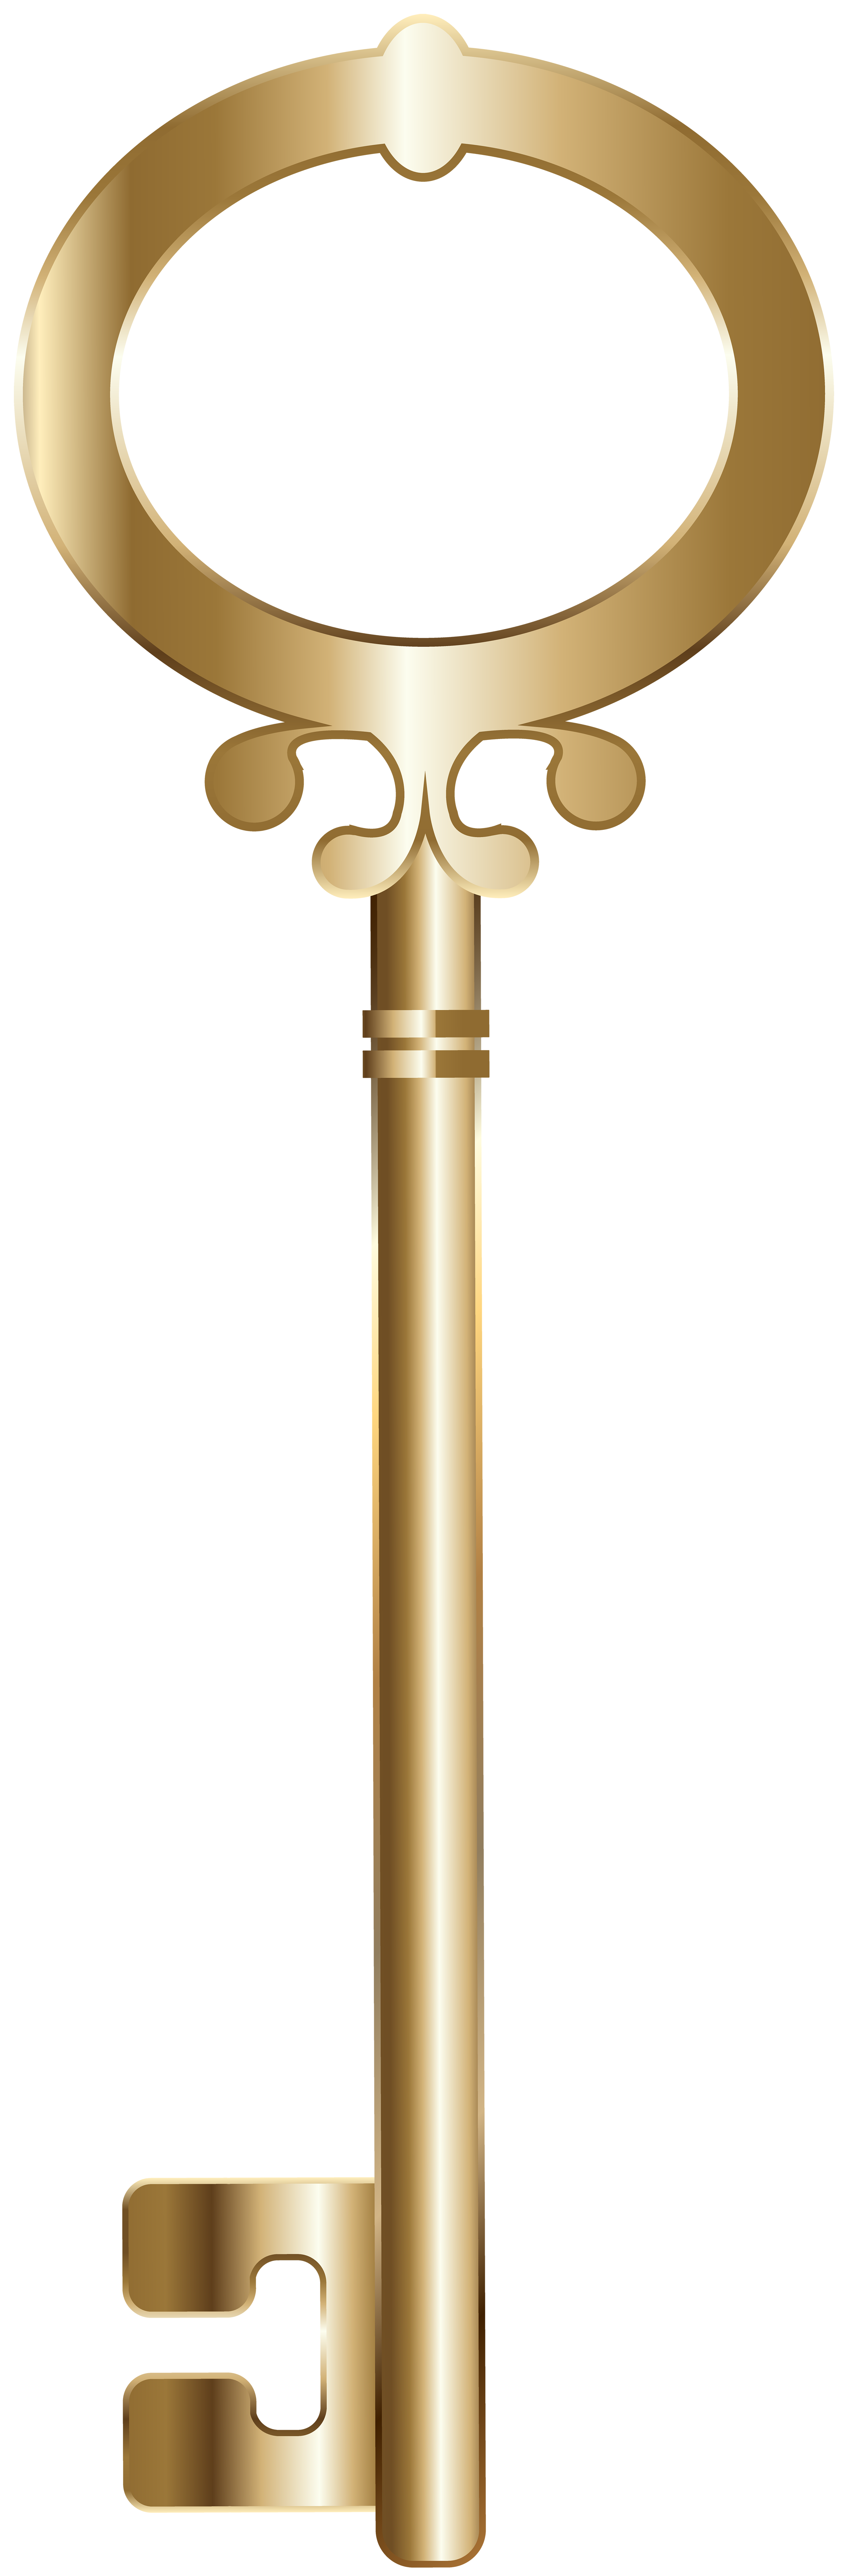 clipart key gold key